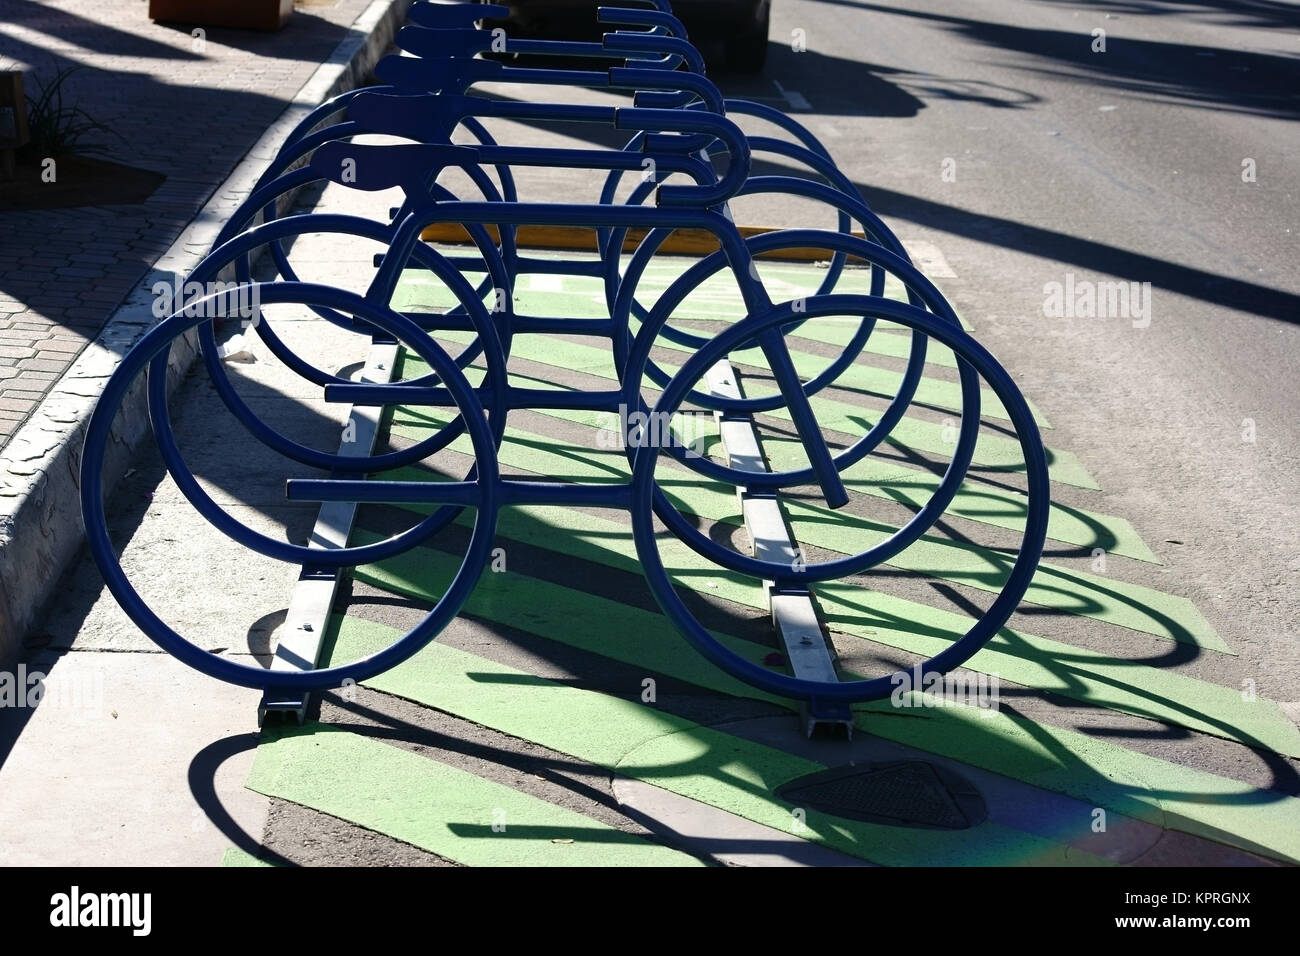 Abstrakte dans Reihe angeordnete Fahrradständer werfen einen Schatten und haben die Form von Rennrades. Banque D'Images